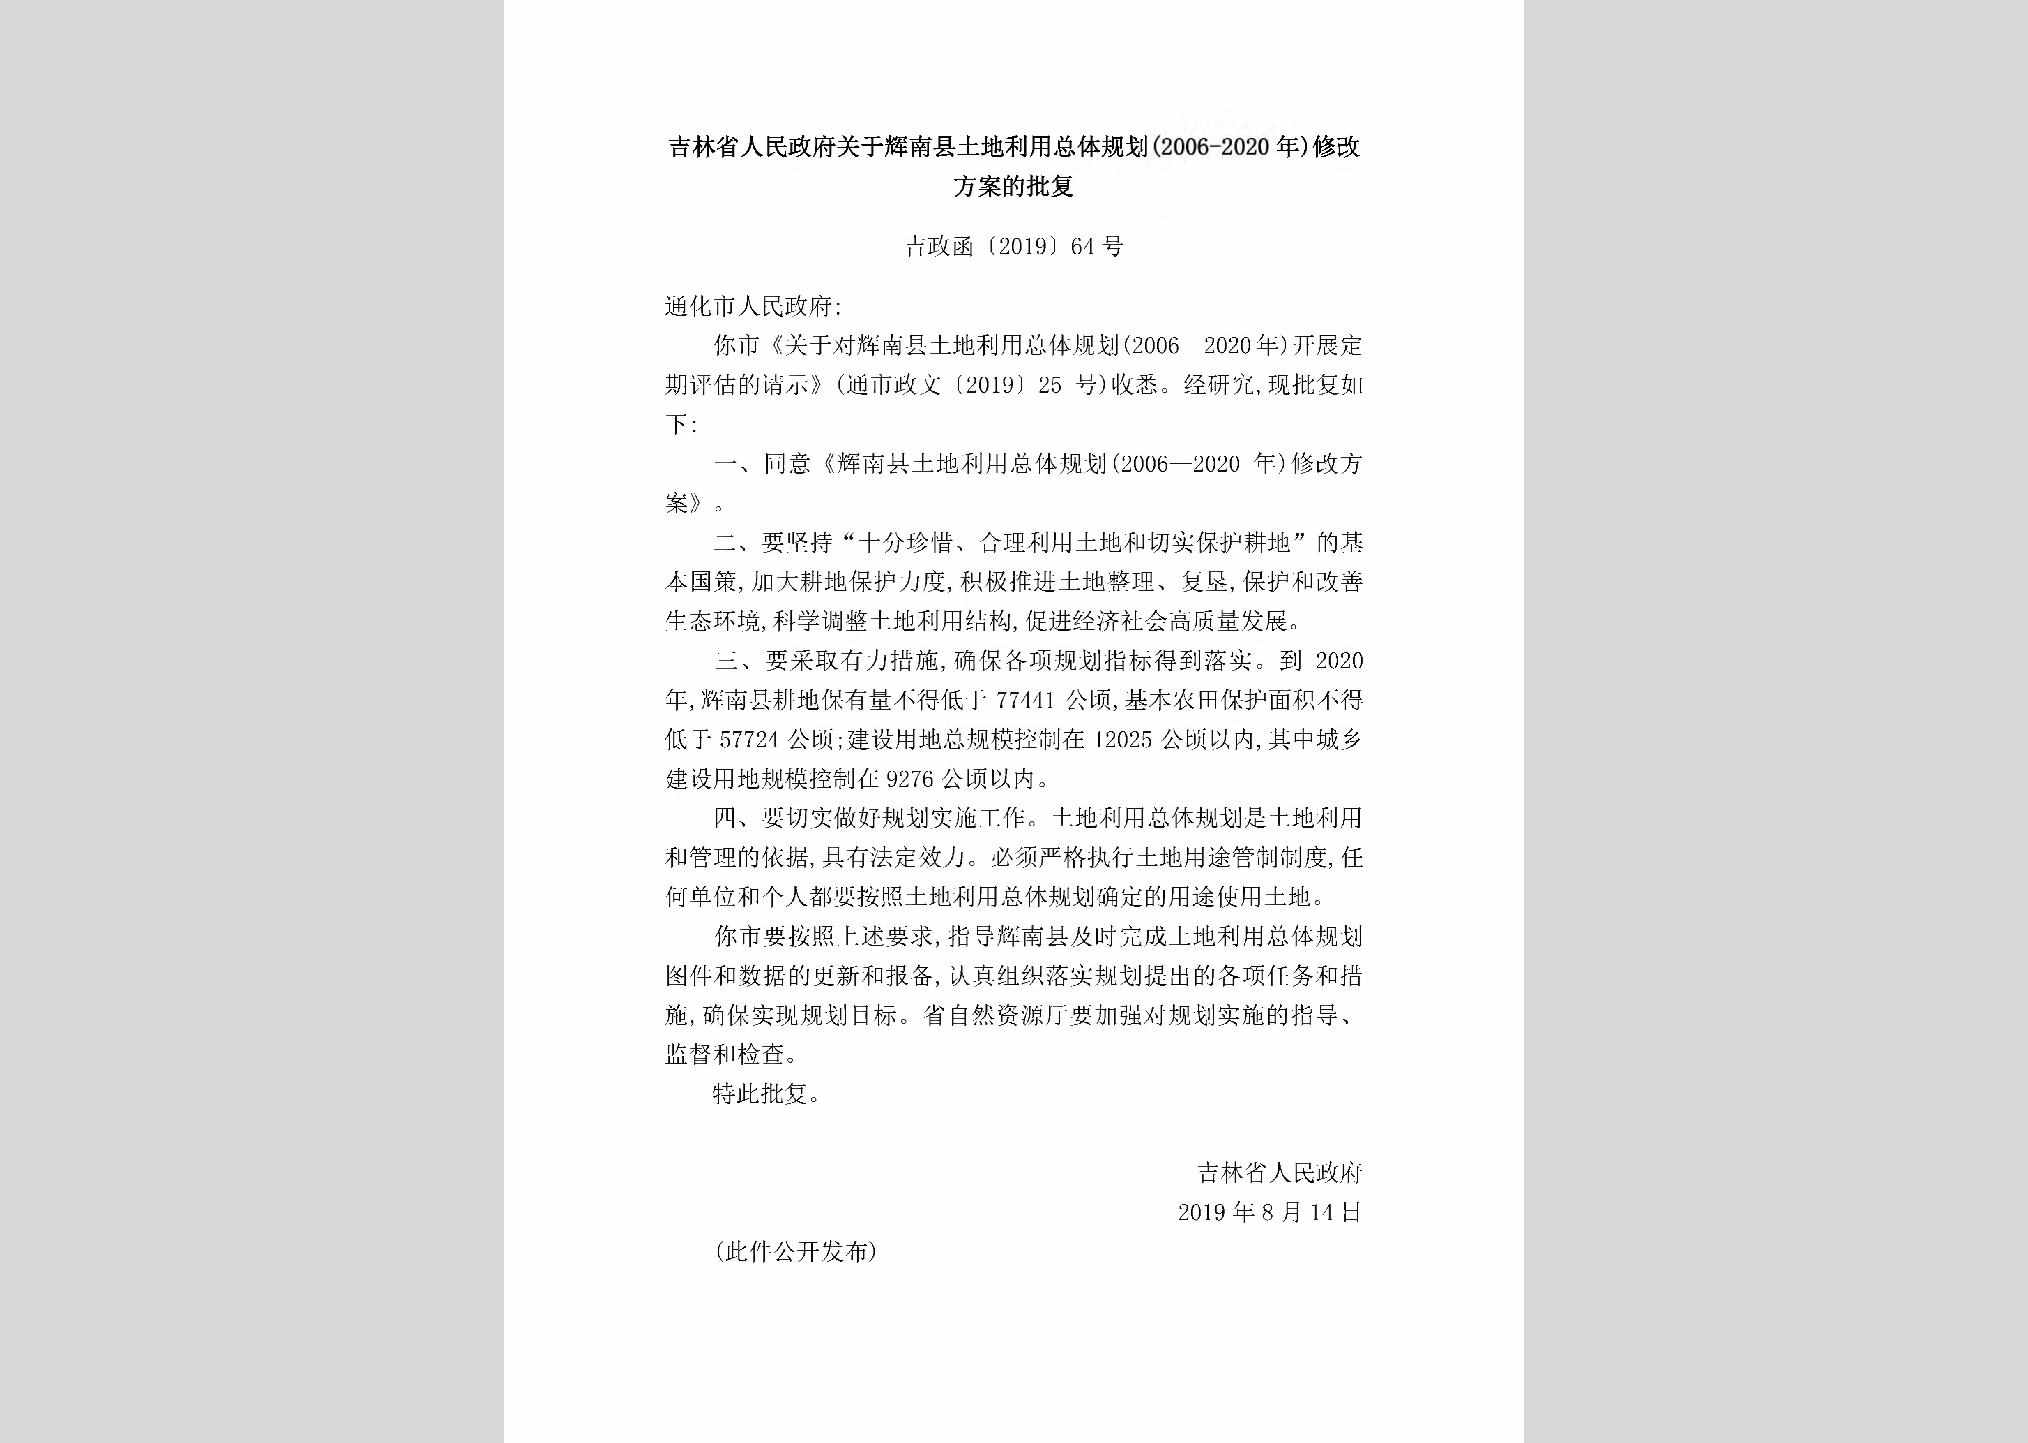 吉政函[2019]64号：吉林省人民政府关于辉南县土地利用总体规划（2006-2020年）修改方案的批复